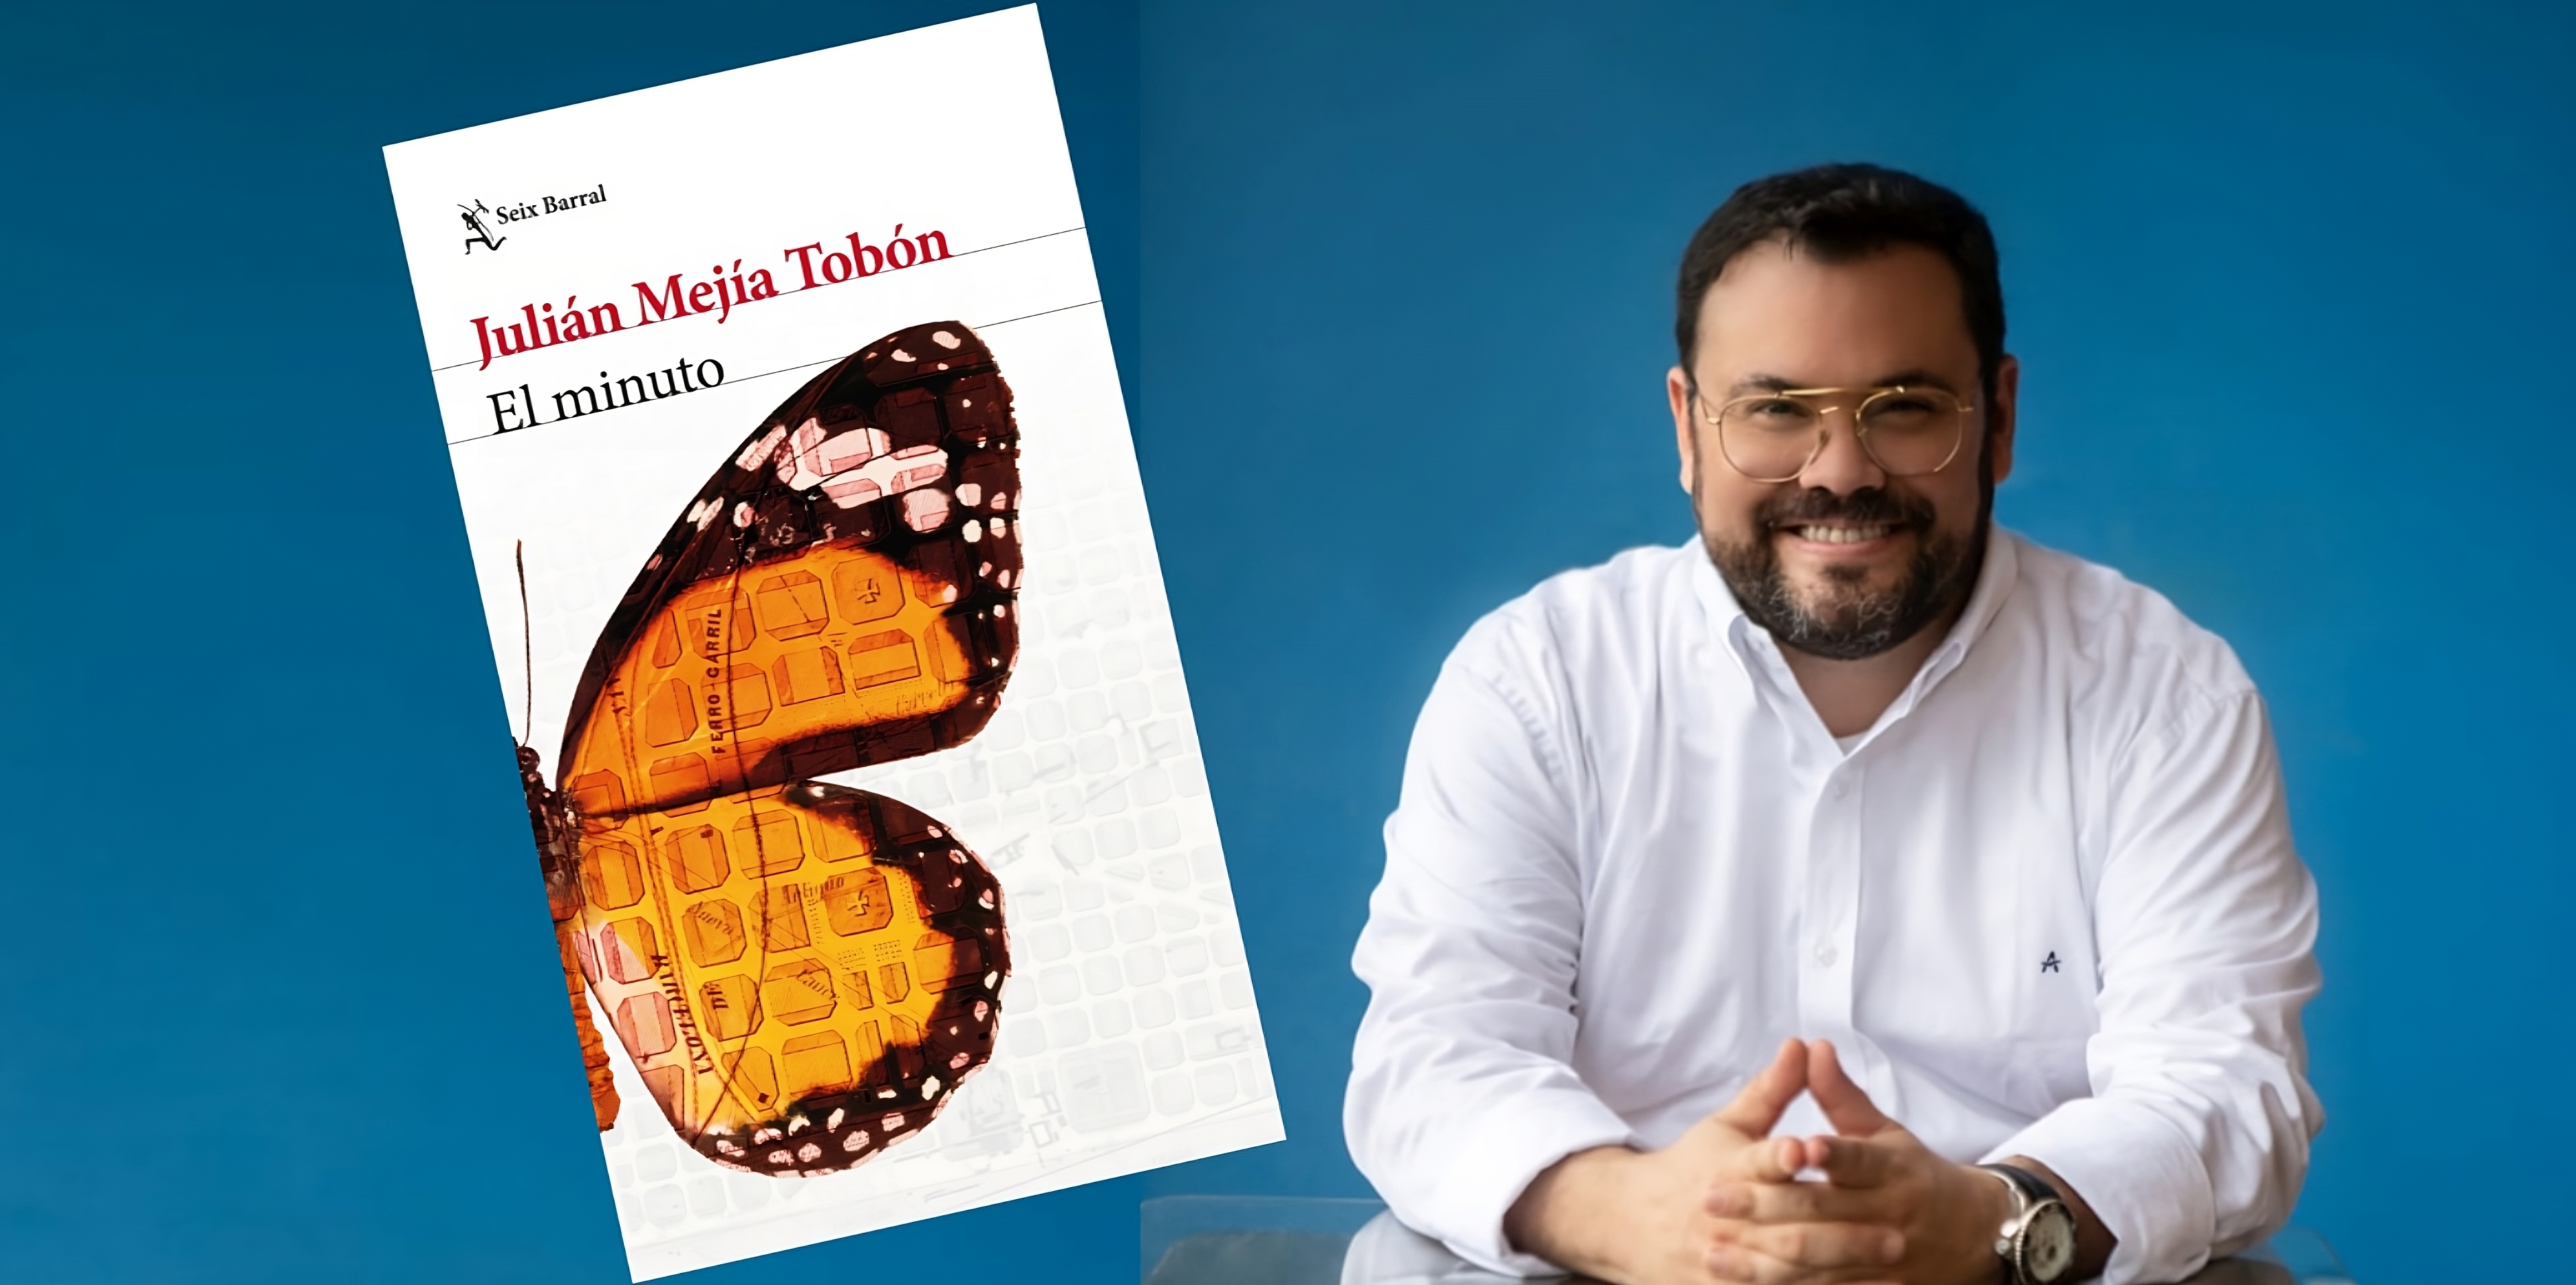 Julián Mejía Tobón habla de “El minuto”, su primera novela: “Cualquiera que se cruce en mi camino podría terminar siendo el germen de un personaje”